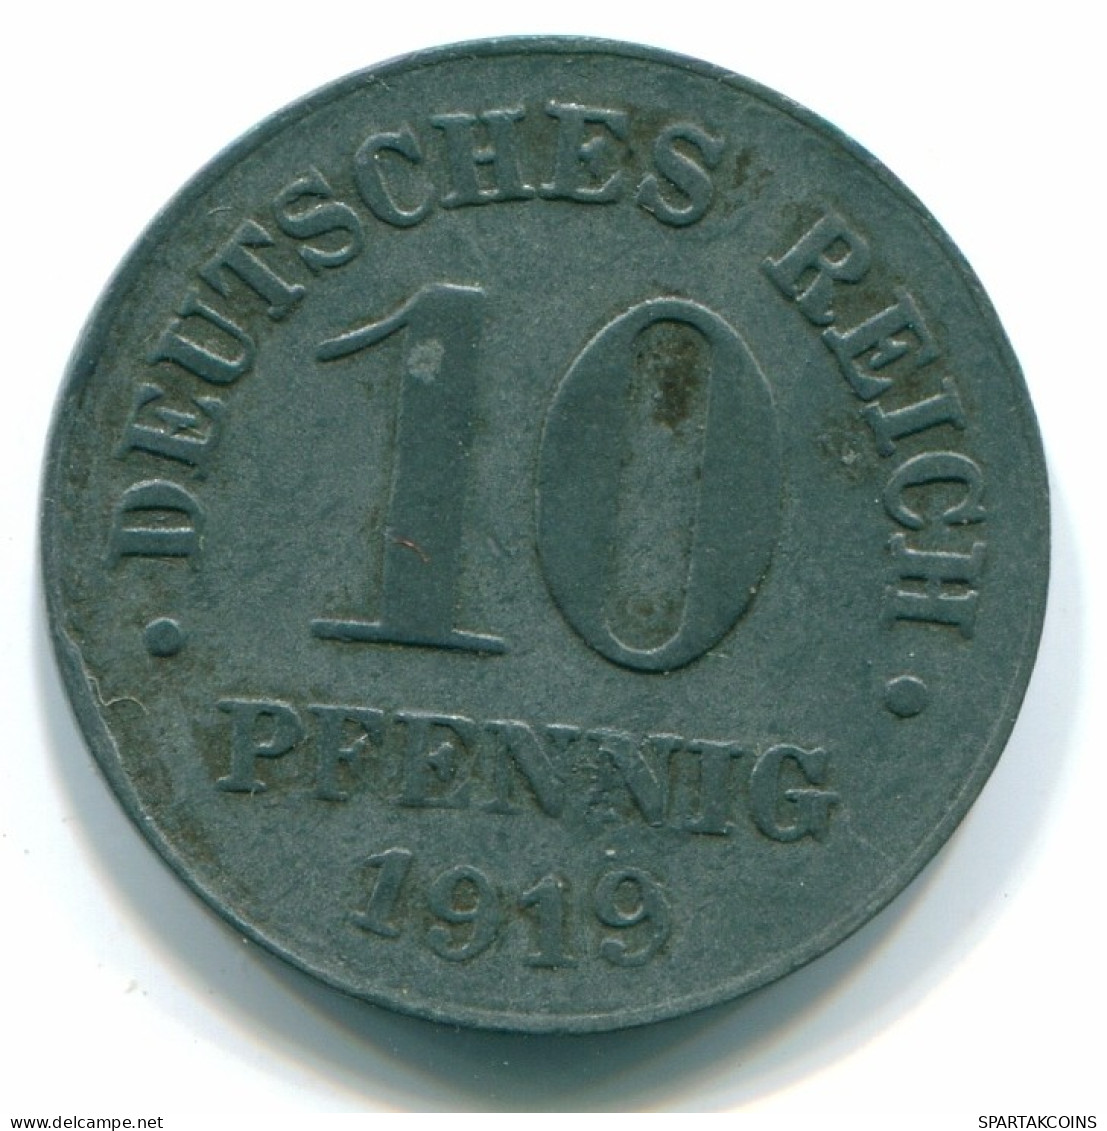 10 PFENNIG 1919 NOTGELD GERMANY Coin #DE10087.3.U.A - 10 Rentenpfennig & 10 Reichspfennig